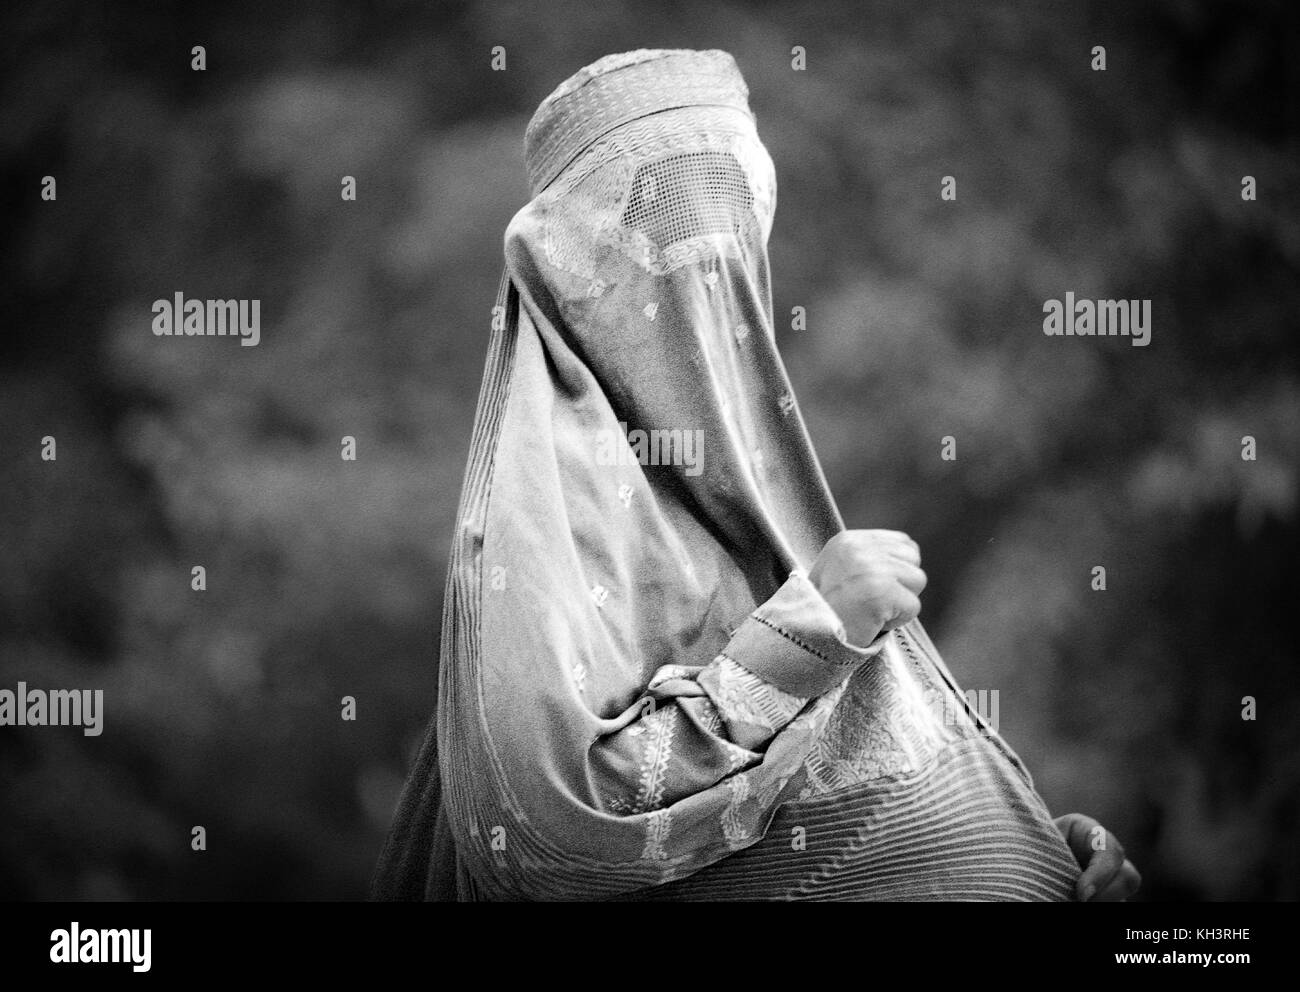 Afghanische Flüchtlingsfrauen tragen eine Burka in einem Sreet in der Nähe eines Flüchtlingslagers in Peshawar. Pakistan. Datum: 08/2000. Foto: Xabier Mikel Laburu. Stockfoto